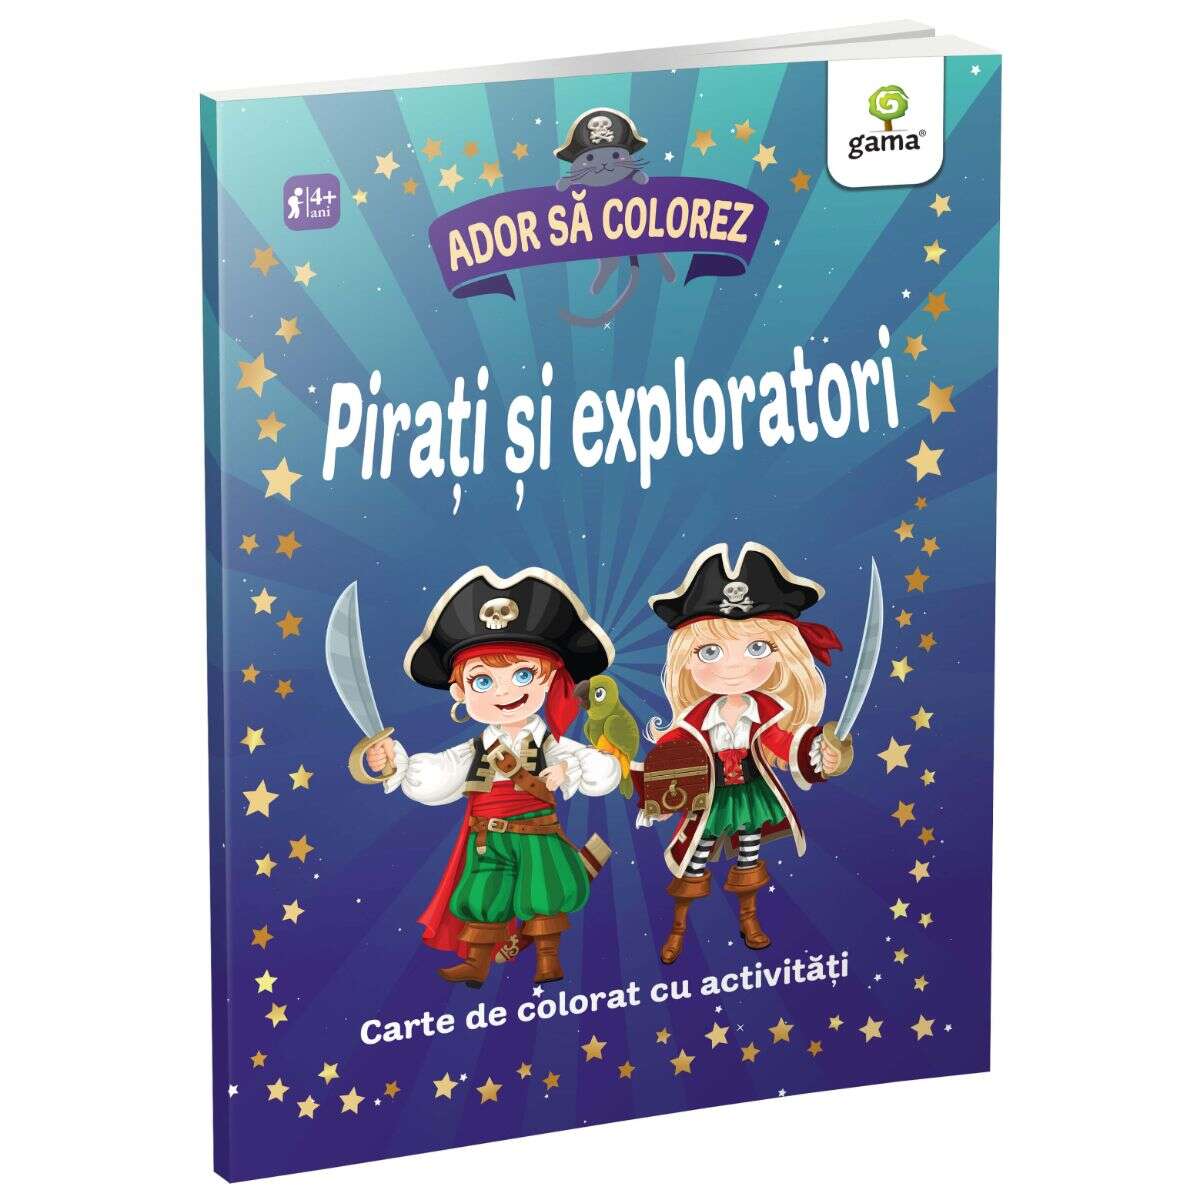 Pirati si exploratori, ador sa colorez